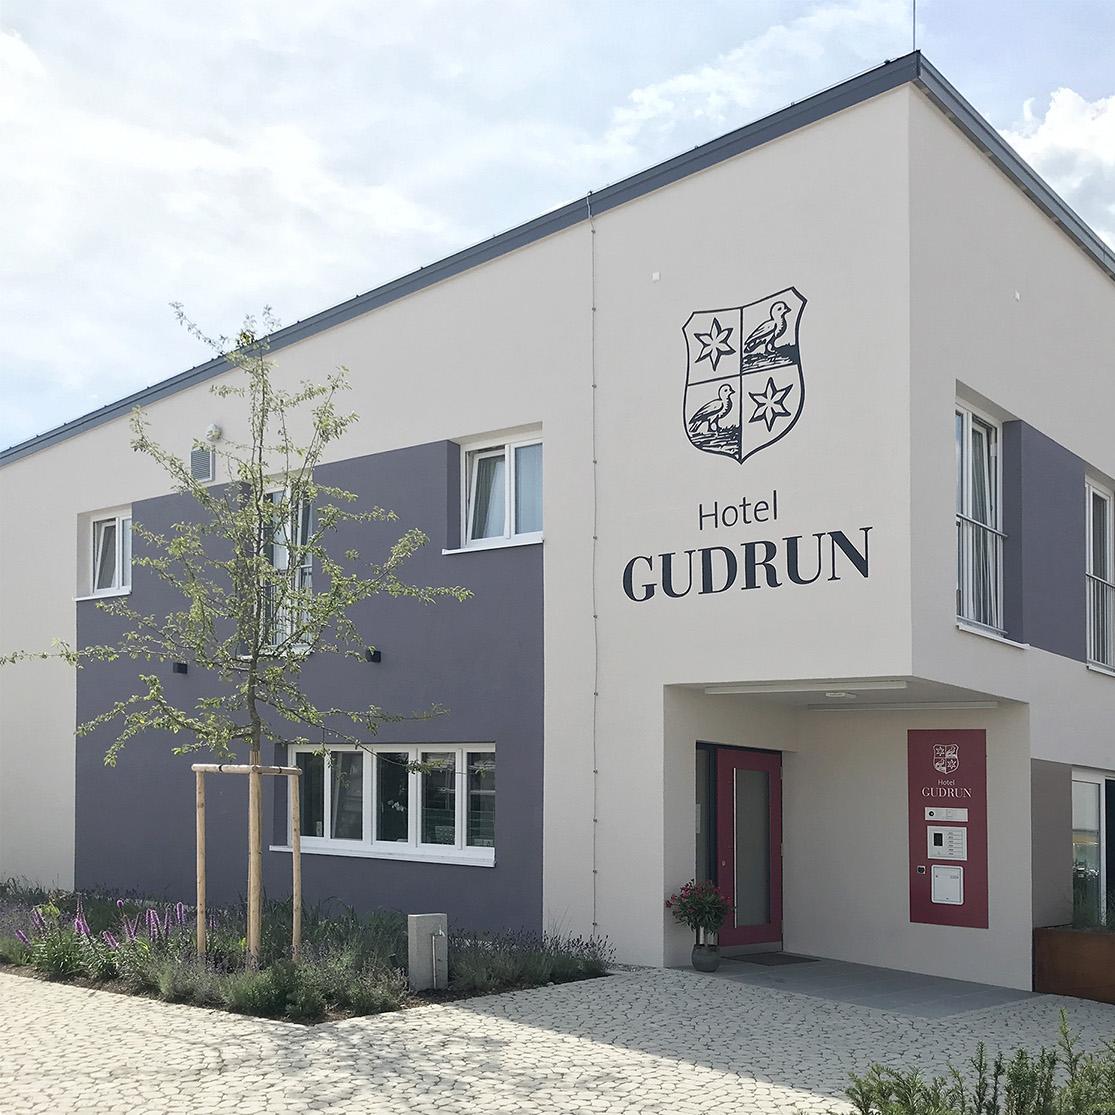 Restaurant "Hotel Gudrun" in  Riedlingen